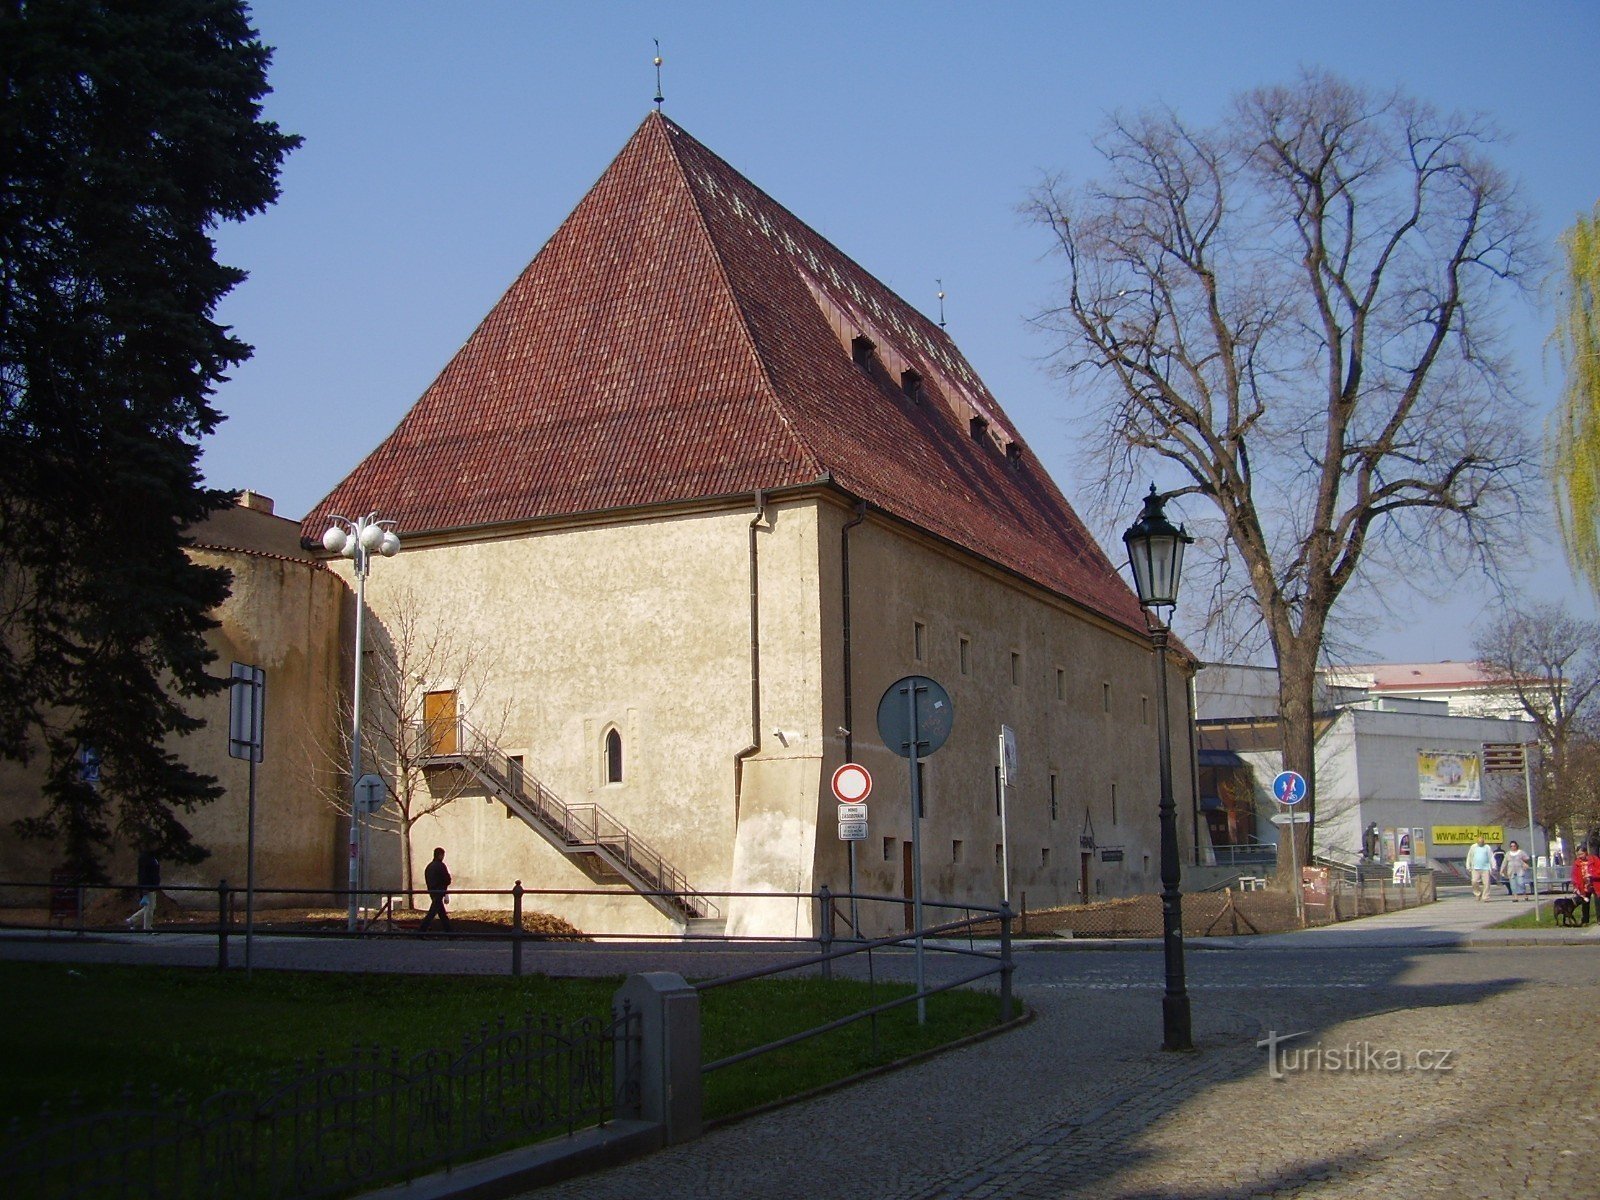 Orașul regal Litoměřice